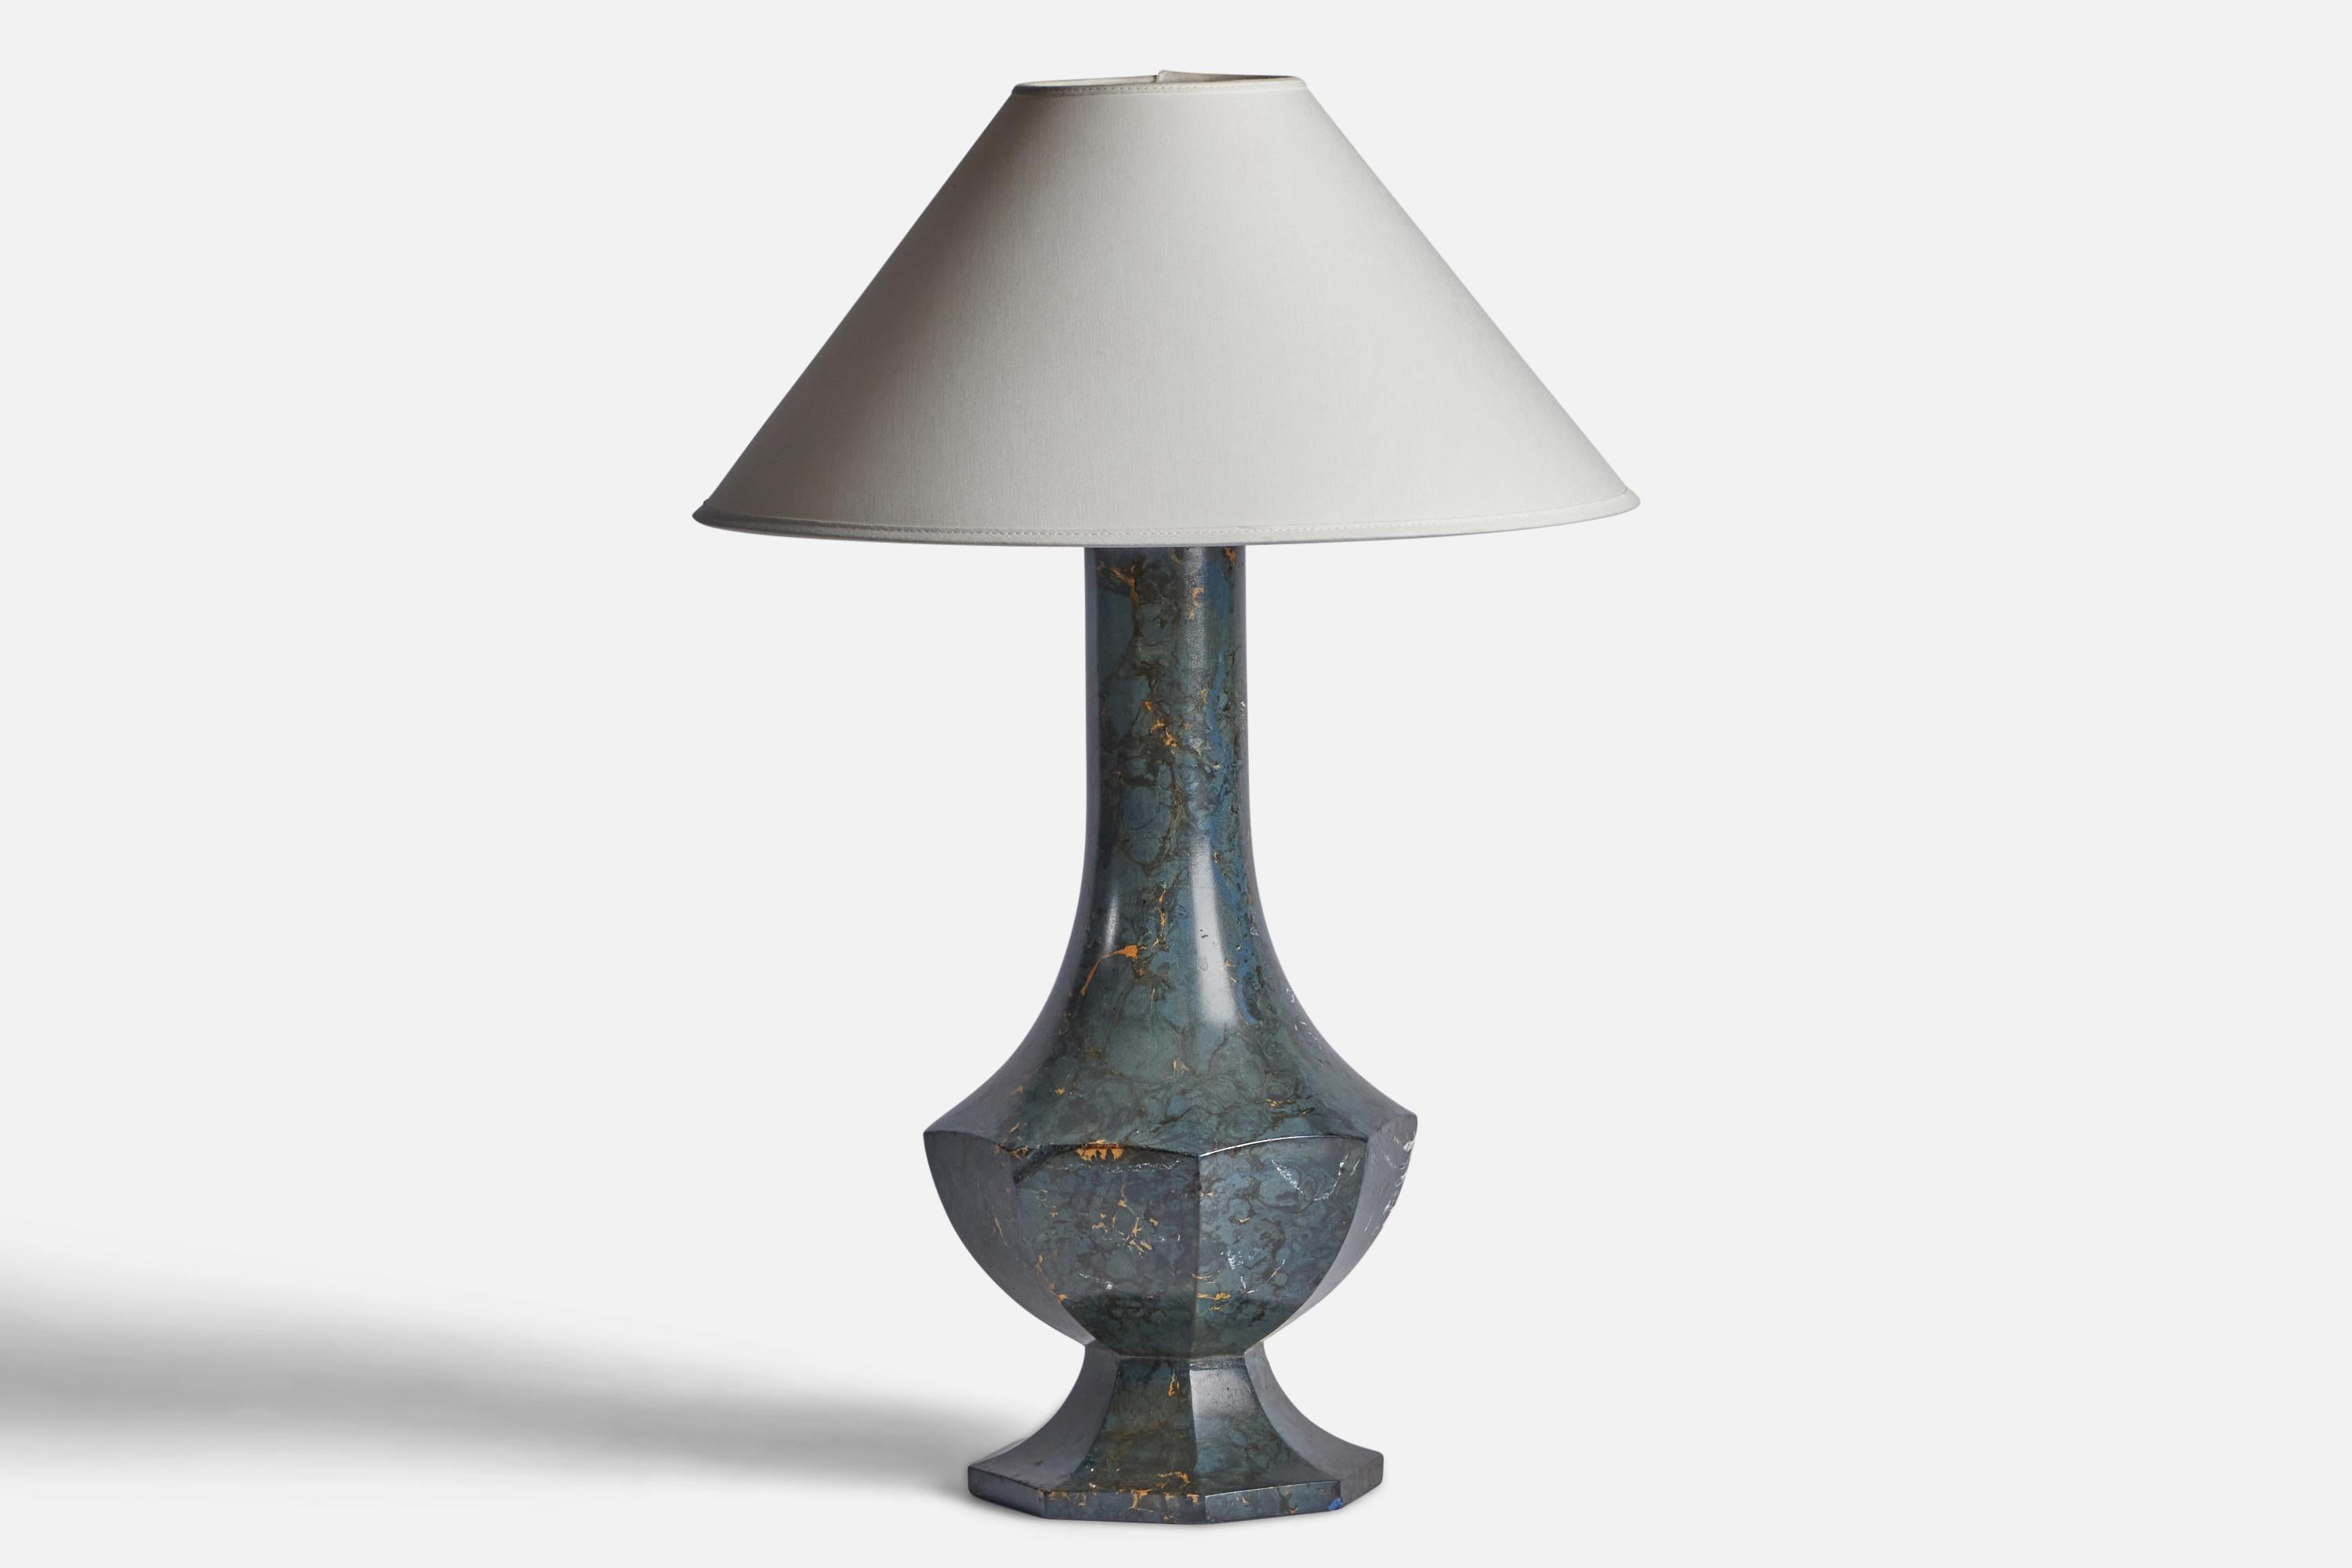 Tischlampe aus blau glasierter Keramik, entworfen und hergestellt in Schweden, ca. 1920er Jahre.

Abmessungen der Lampe (Zoll): 19